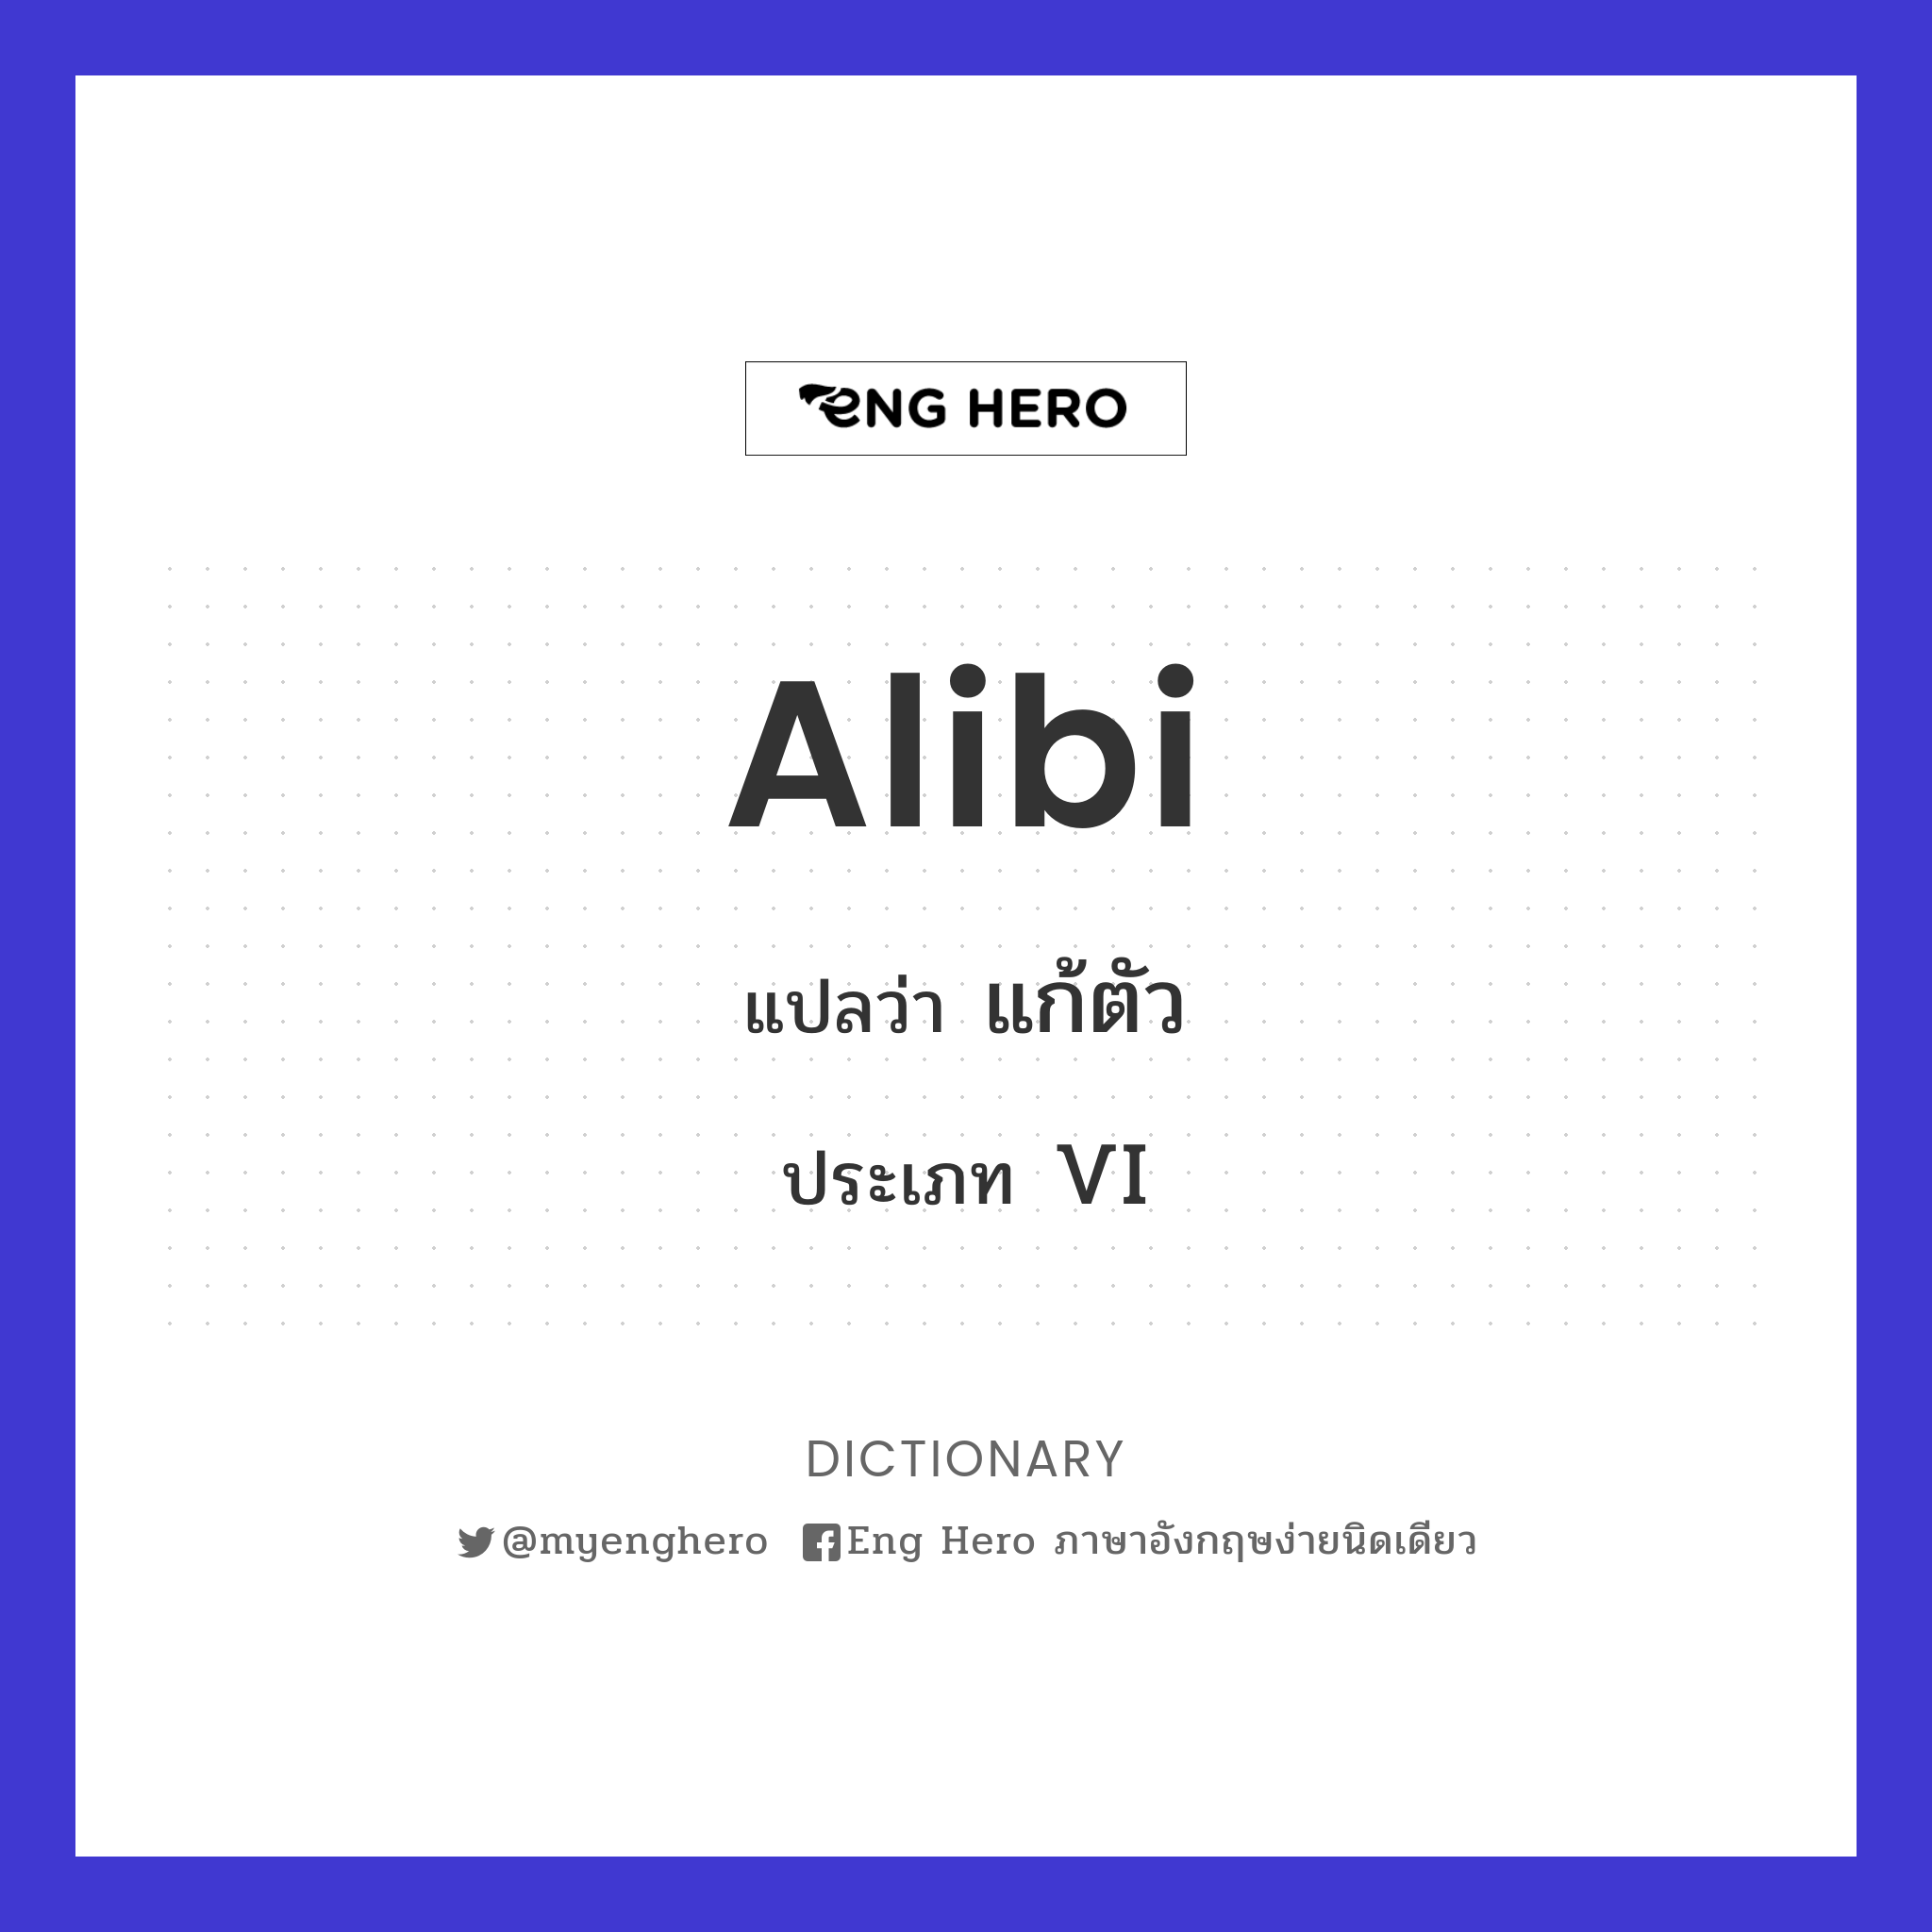 alibi